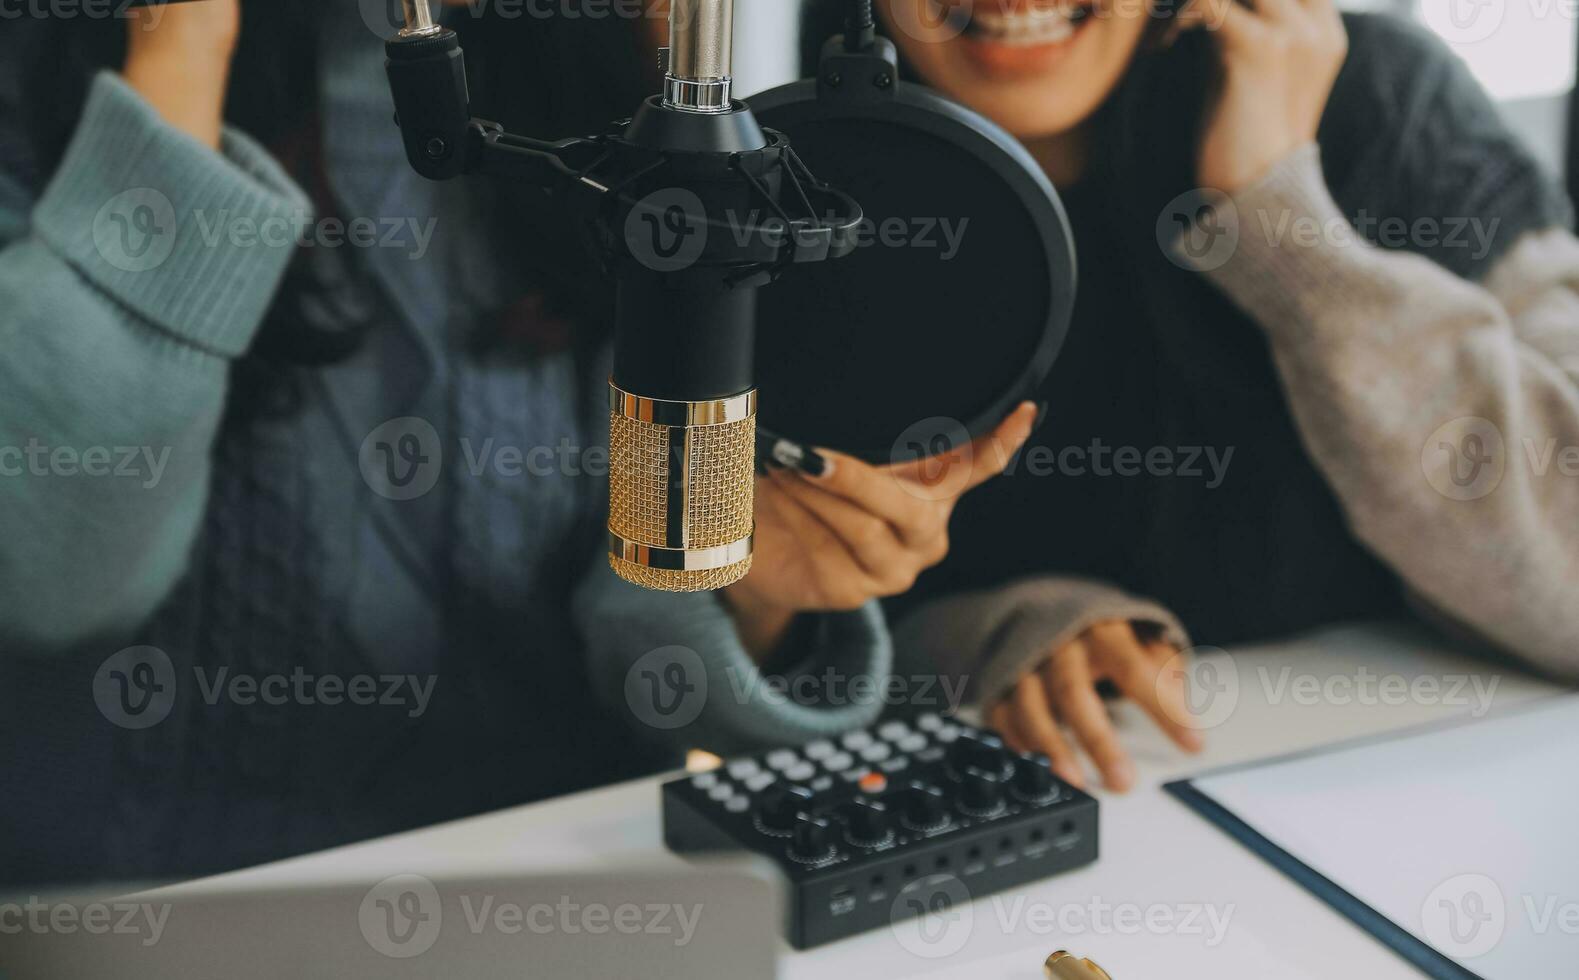 mulher gravando um podcast em seu laptop com fones de ouvido e um microscópio. podcaster feminino fazendo podcast de áudio de seu estúdio em casa. foto